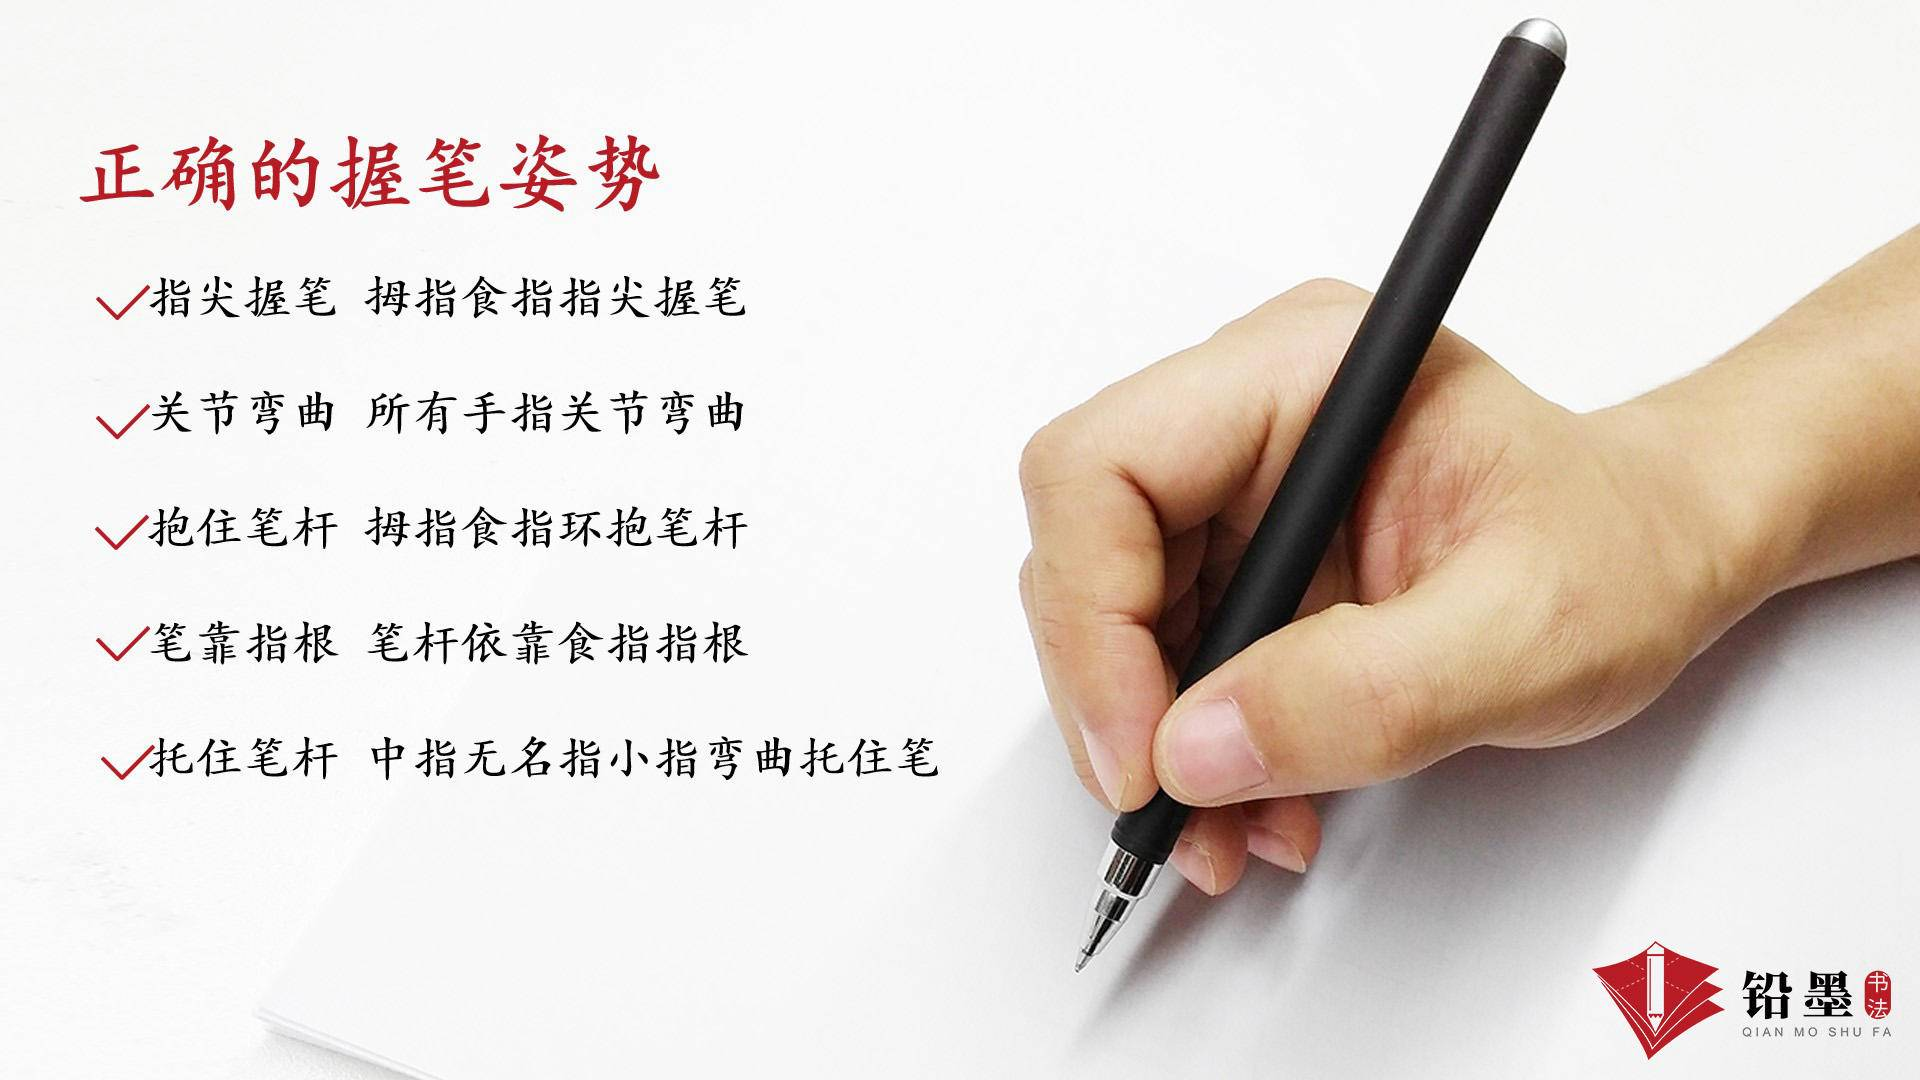 铅墨书法希望,所有小朋友都能拥有正确的握笔姿势,轻轻松松把字写好!